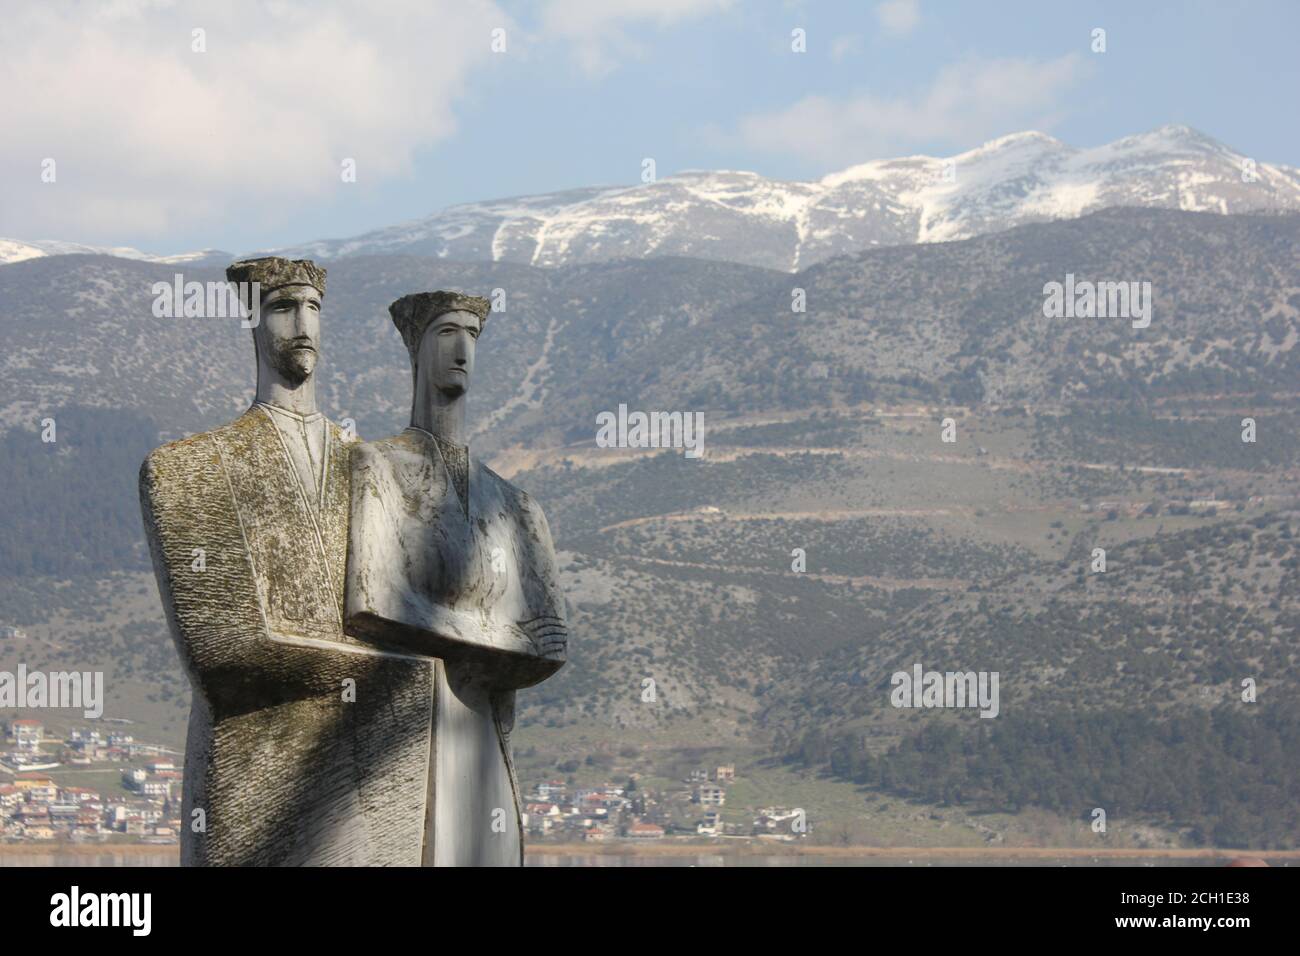 The snowy pick of Mitsikeli mountain as seen from Ioannina city , Ipirus , Greece Stock Photo